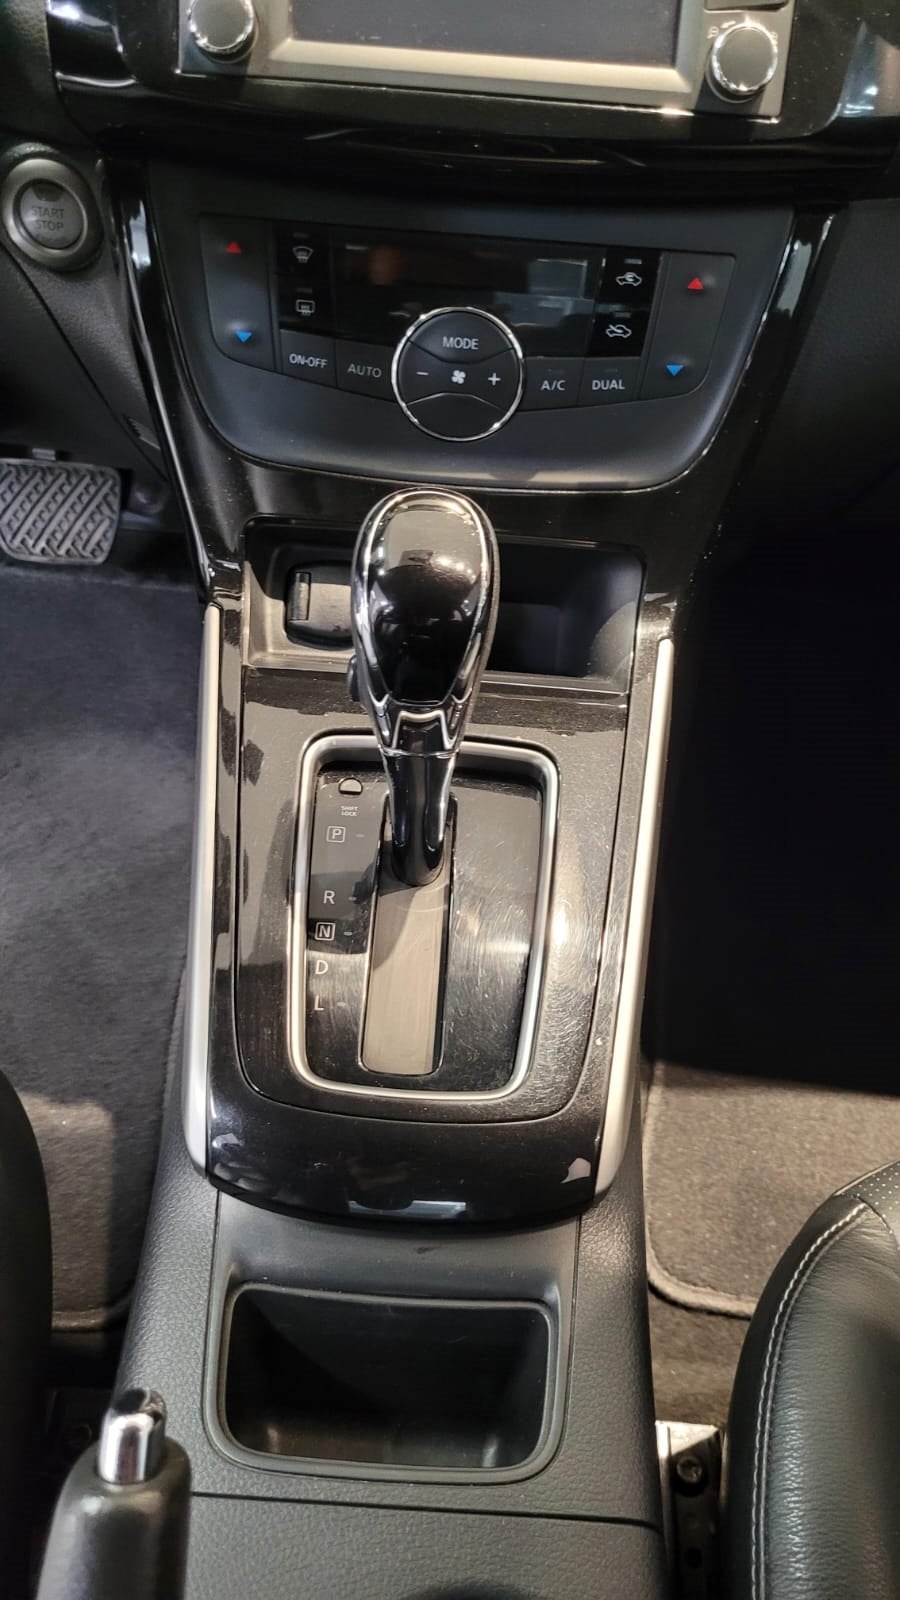 2018 Nissan SENTRA EXCLUSIVE L4 1.8L 129 CP 4 PUERTAS AUT PIEL BA AA QC